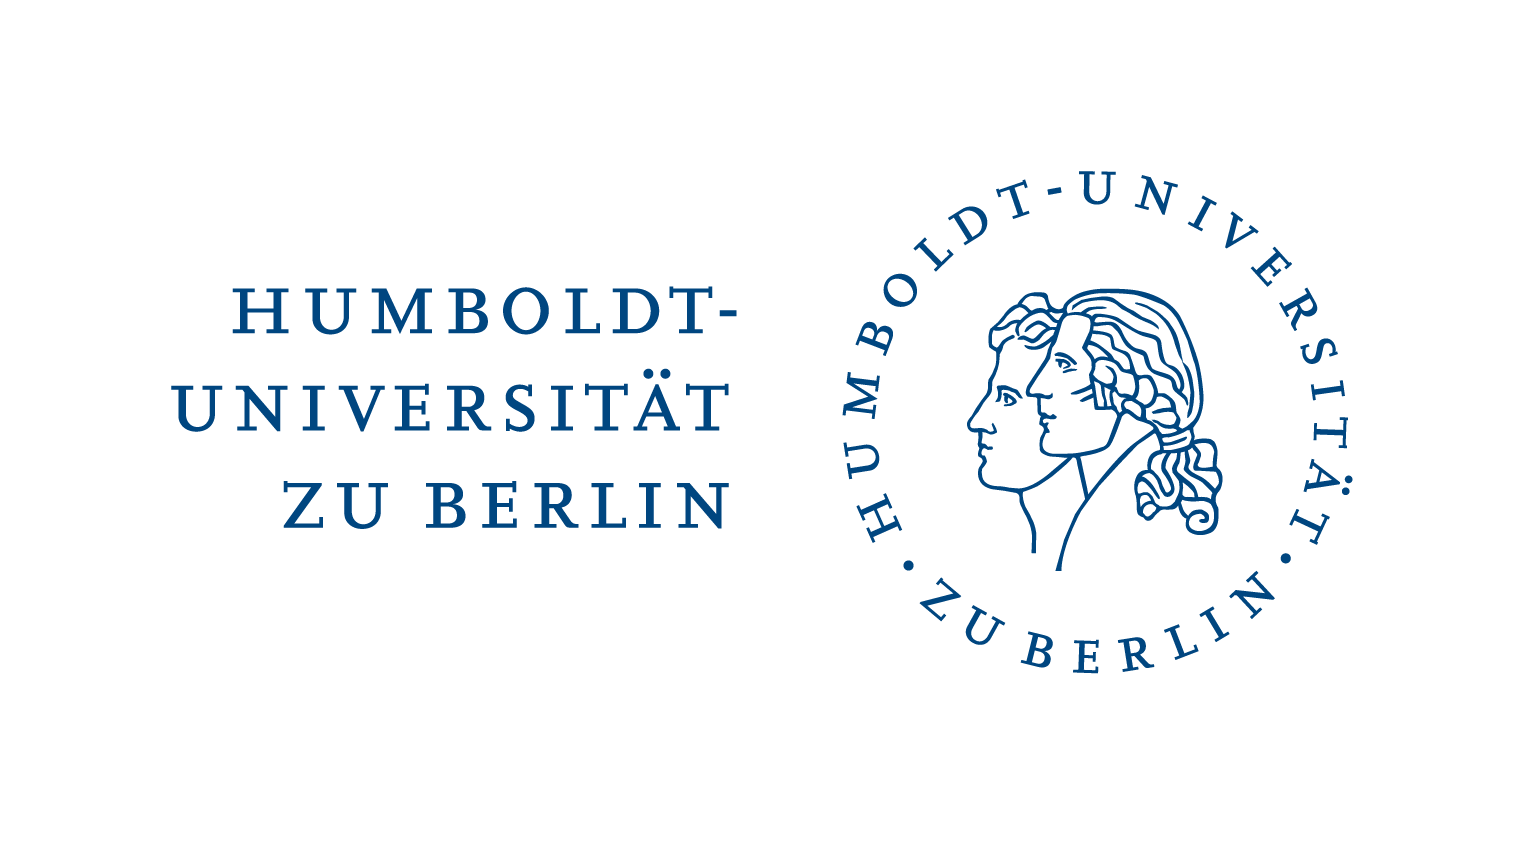 Humboldt-Universität zu Berlin, Kombination Logo und Wortmarke